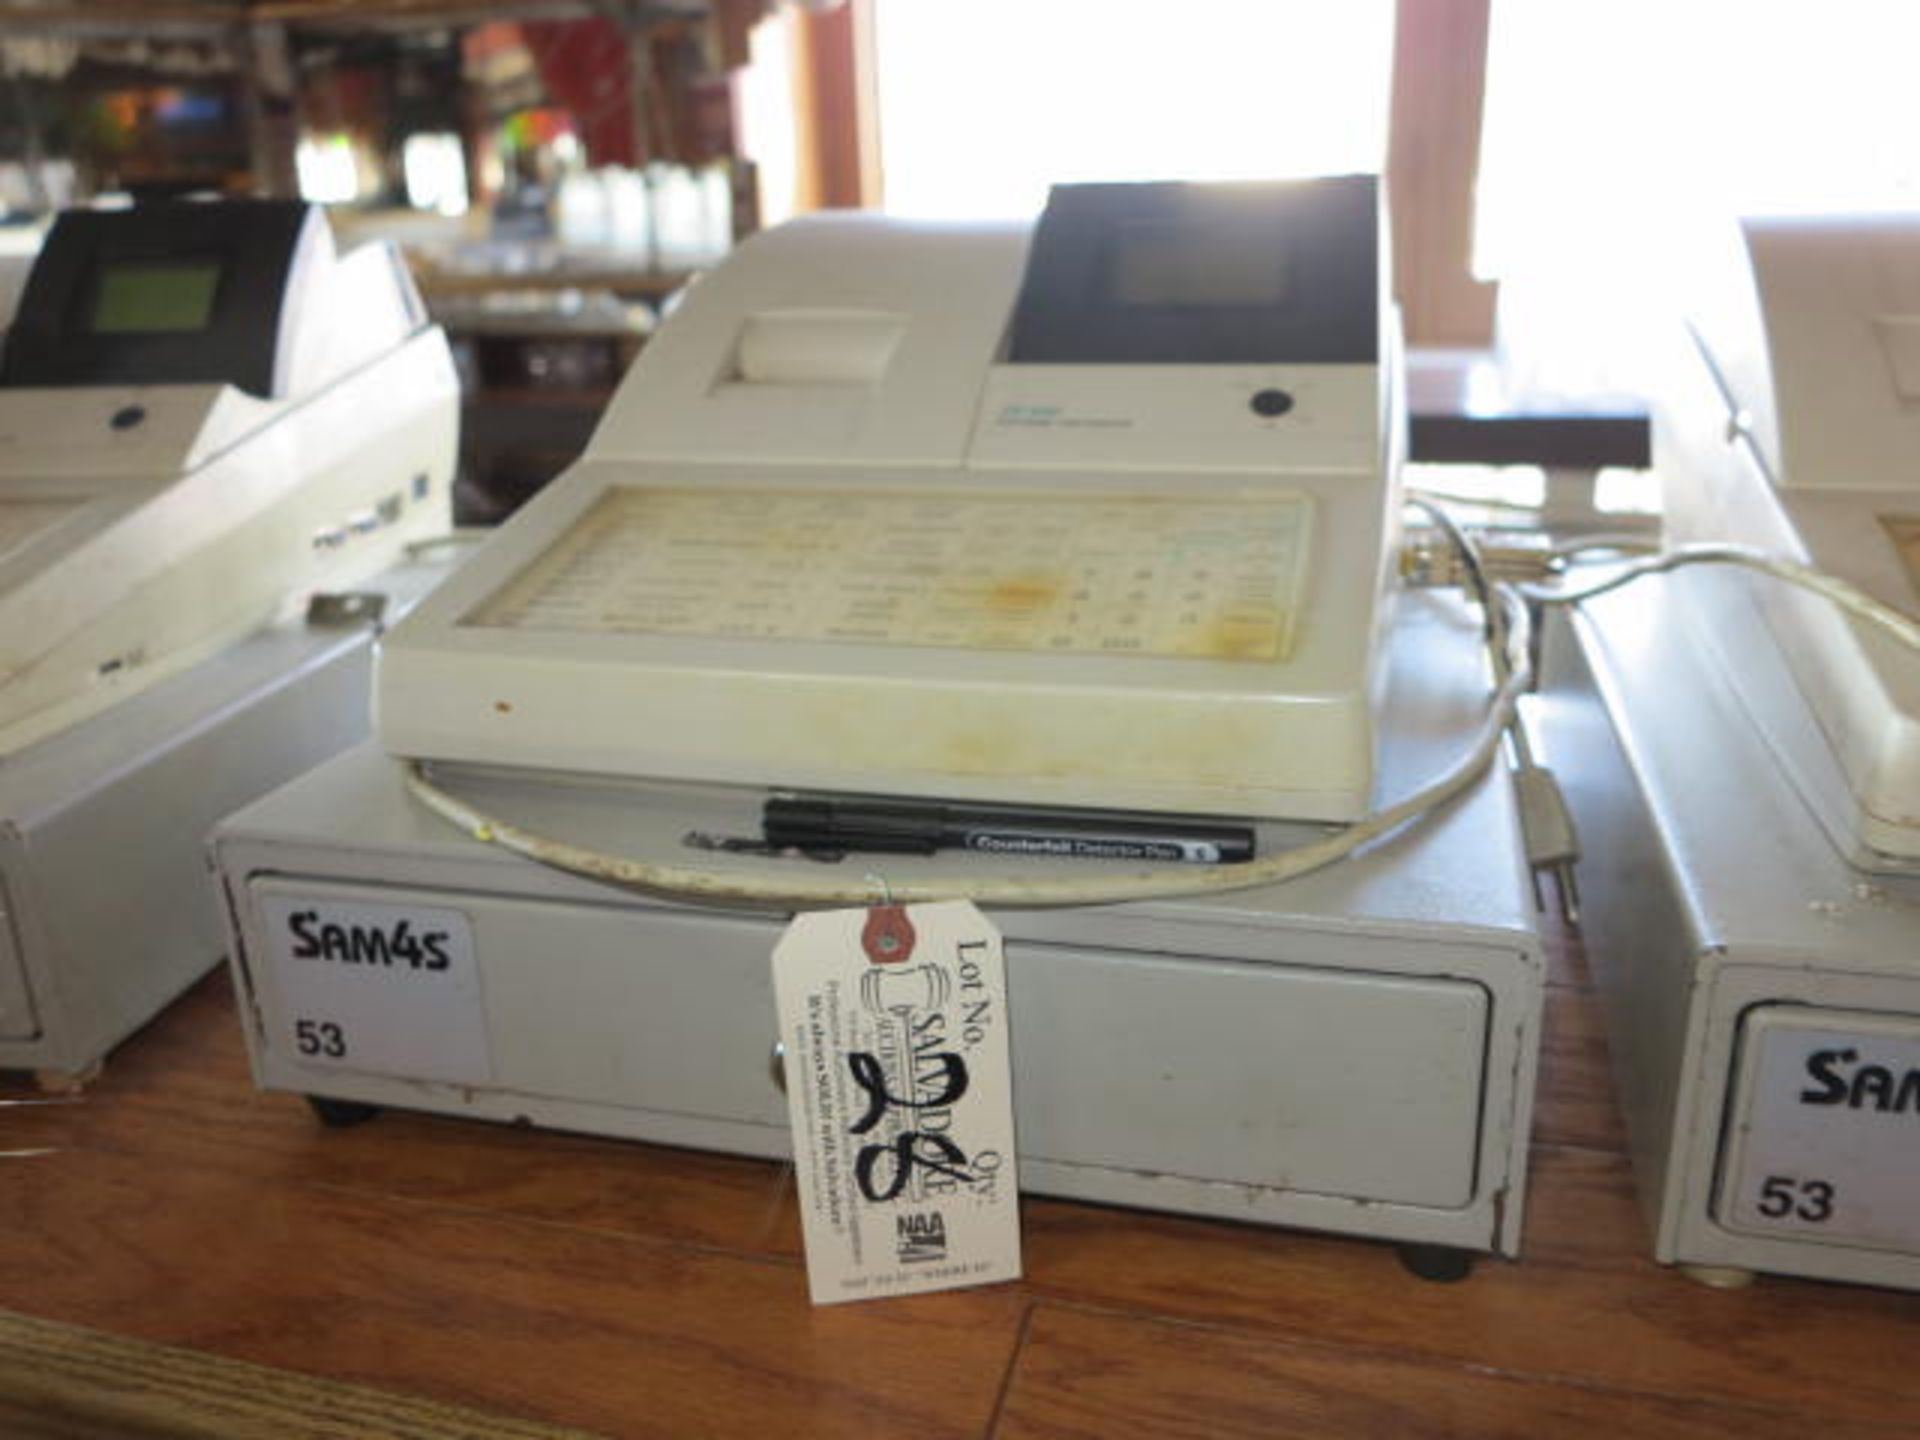 Sam4S Model ER-650 Cash Register